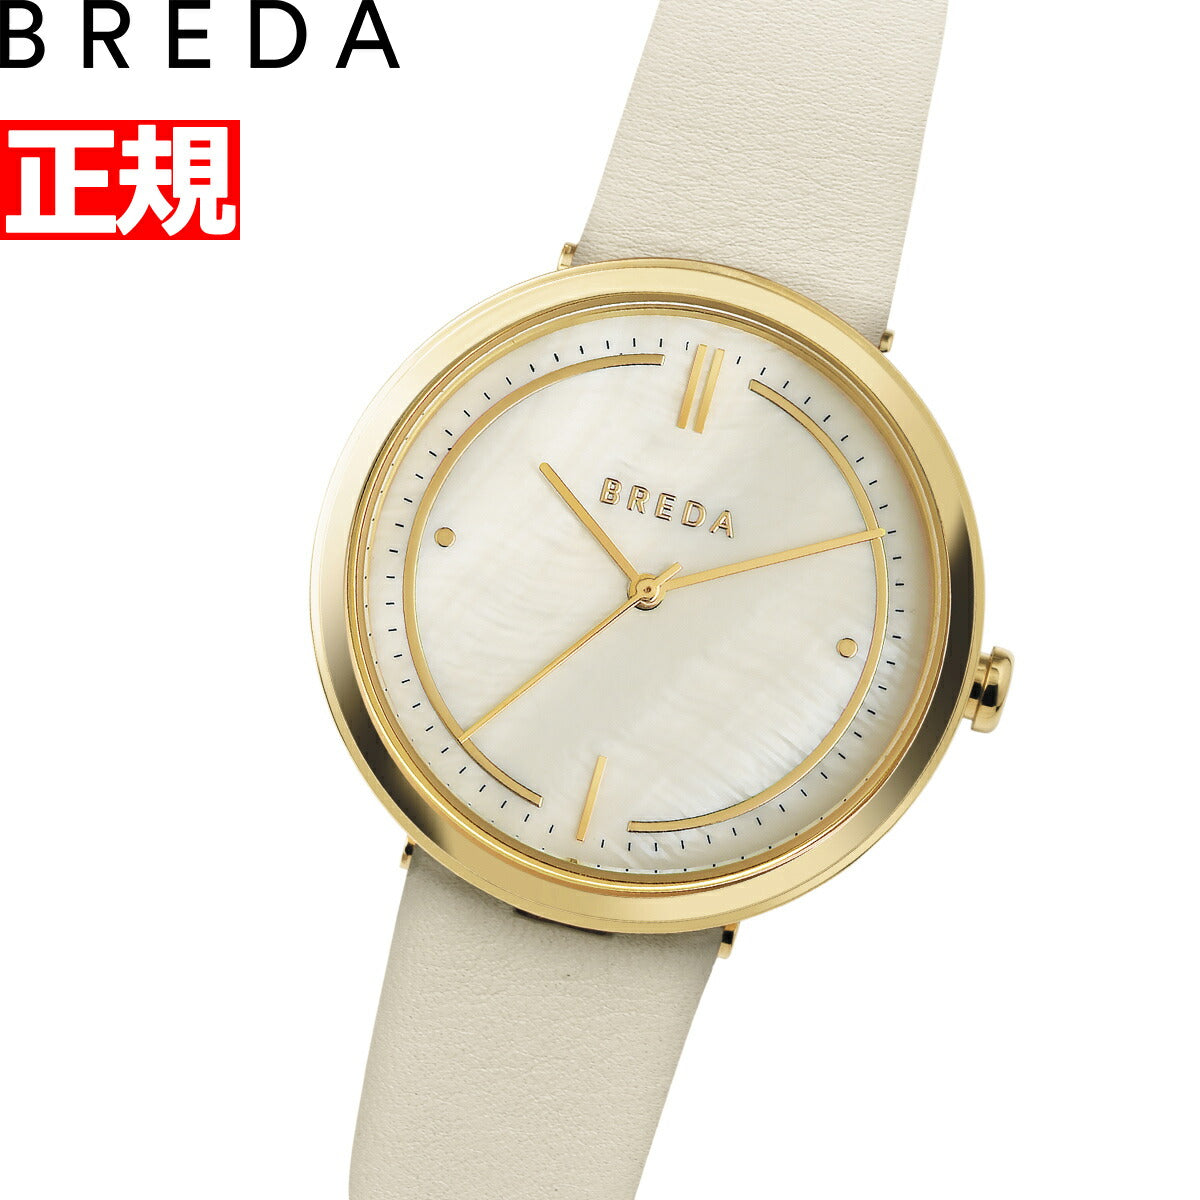 ブレダ BREDA 腕時計 レディース 日本限定モデル アグネス AGNES アグネス・マーティン Agnes Martin 1733f